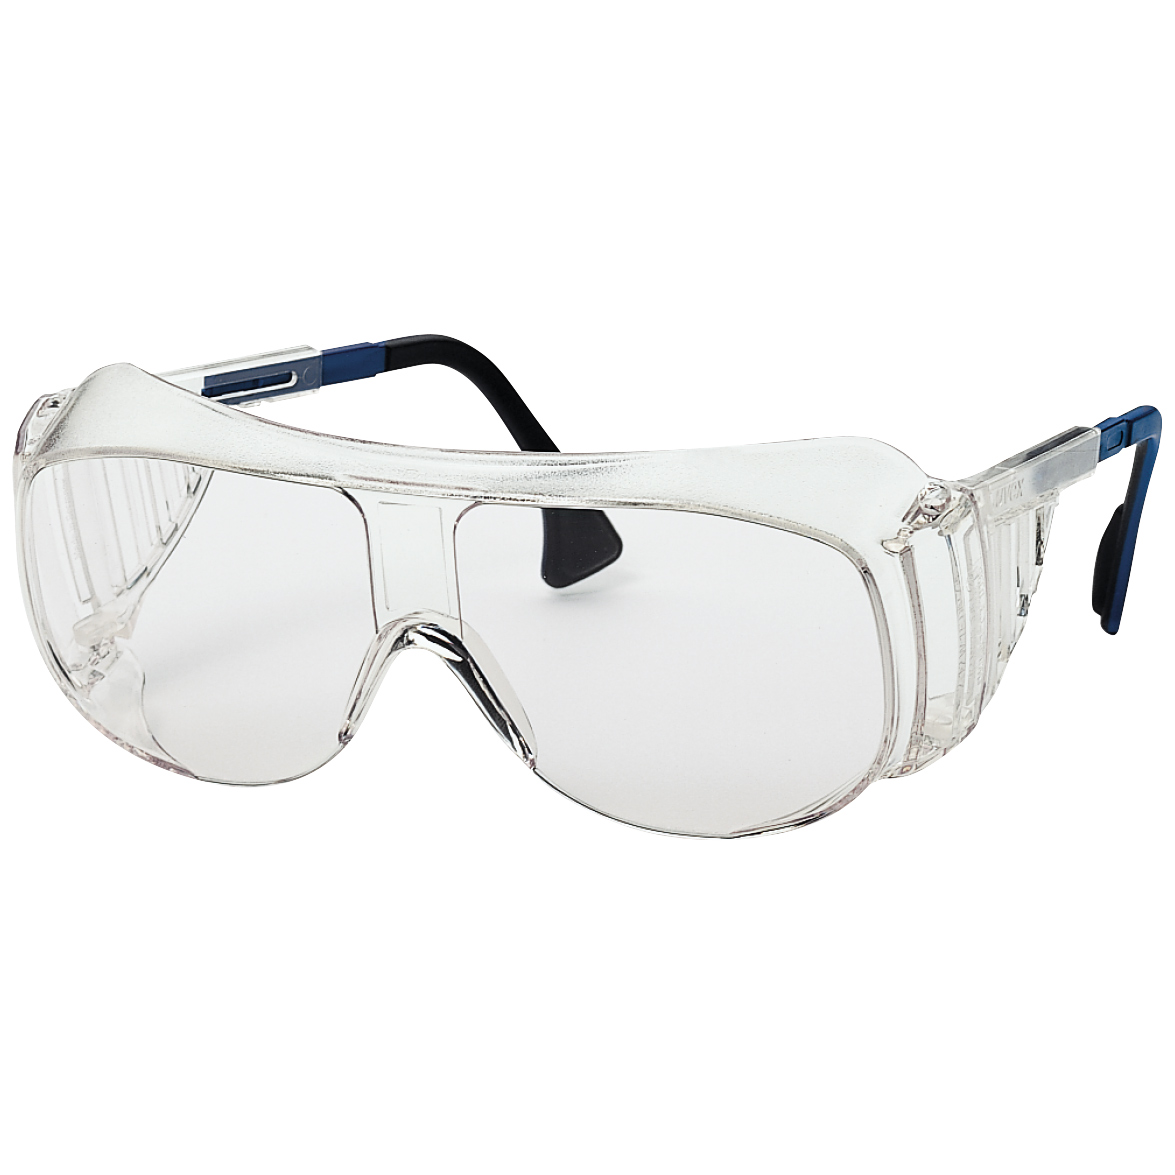 2 Stücke Sicherheitsschweißbrille Arbeitsschutzbrille Augenschutz für 